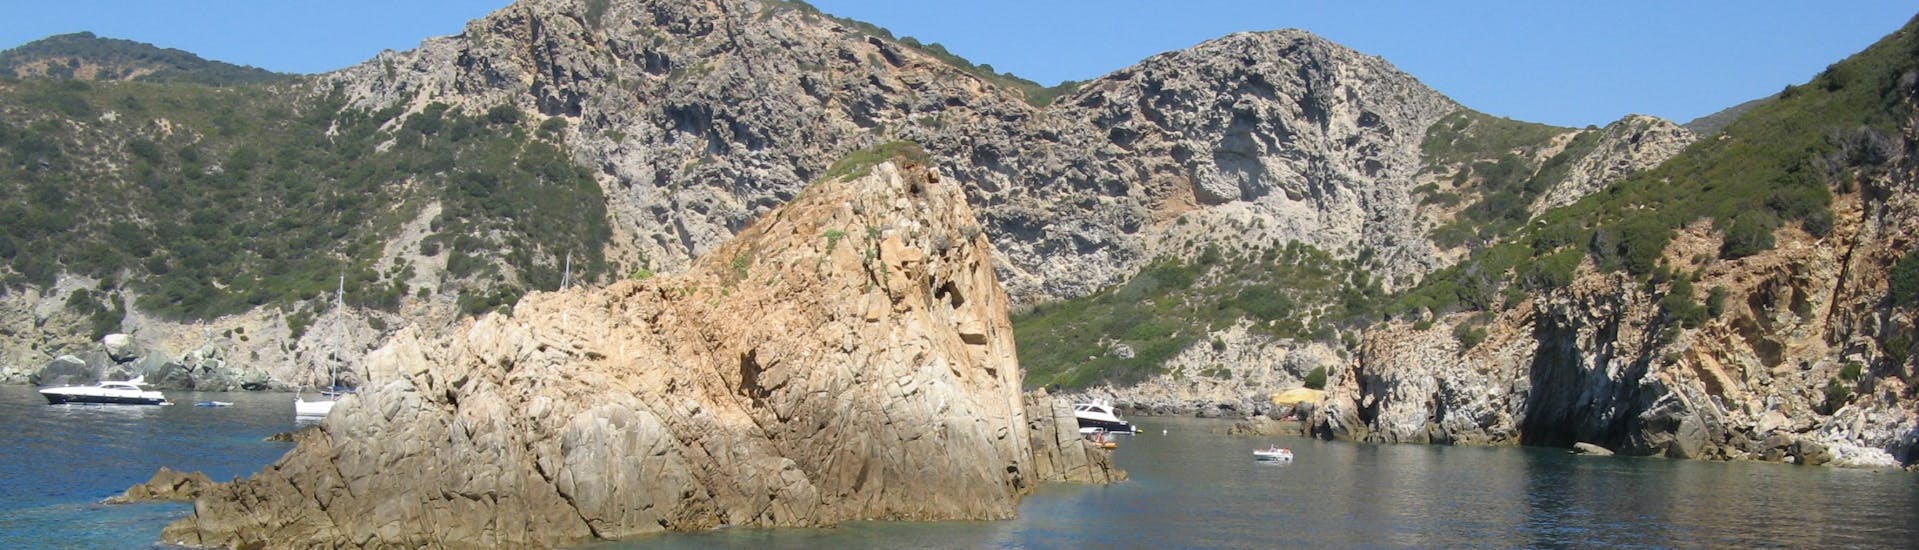 Vue sur le littoral lors de notre balade en bateau sur l'île de Giglio avec une pause pour se baigner grâce à Toscana Mini Crociere.